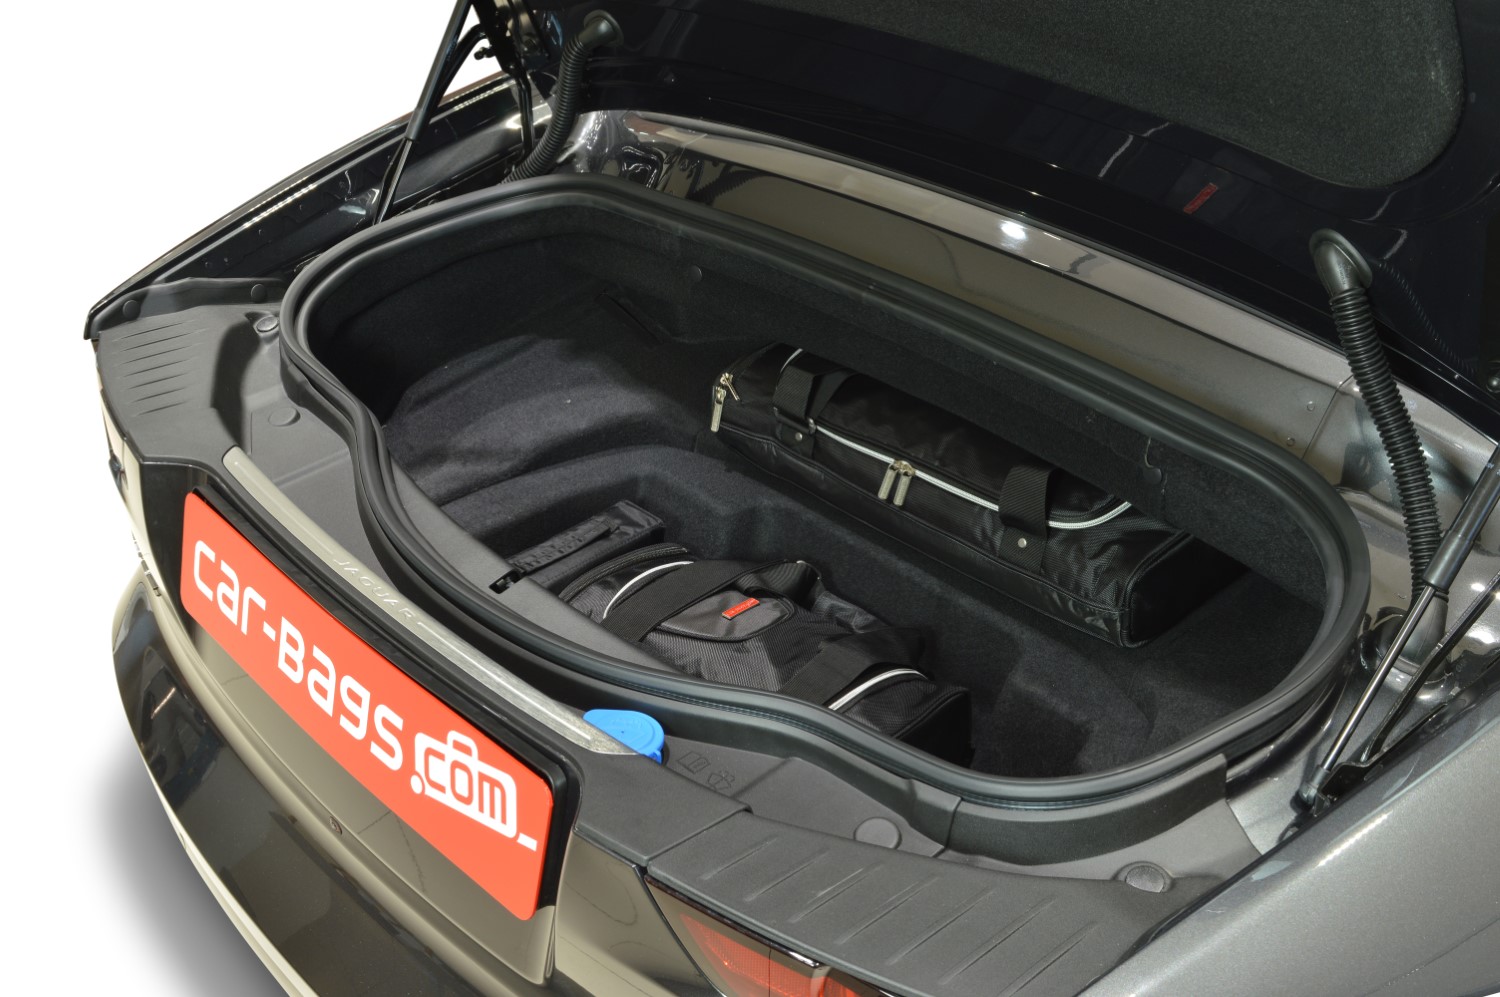 Housse de voiture adaptée à Jaguar F-Type Roadster 2013-actuel intérieur €  150